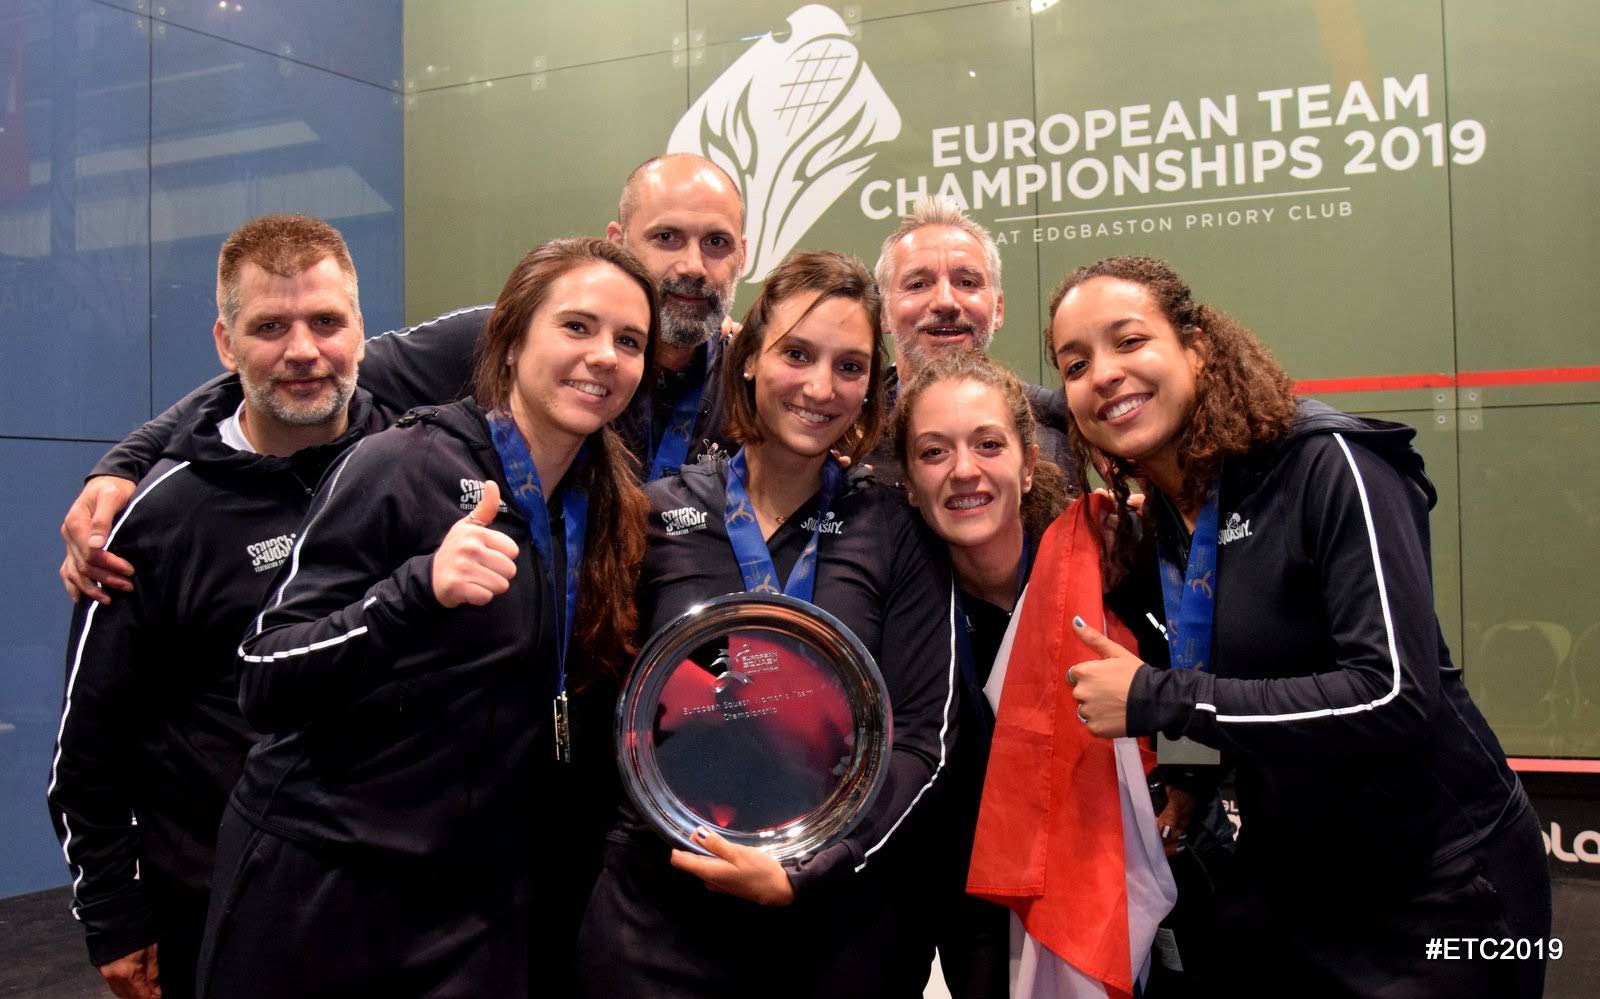 L'équipe de France championne d'Europe 2019